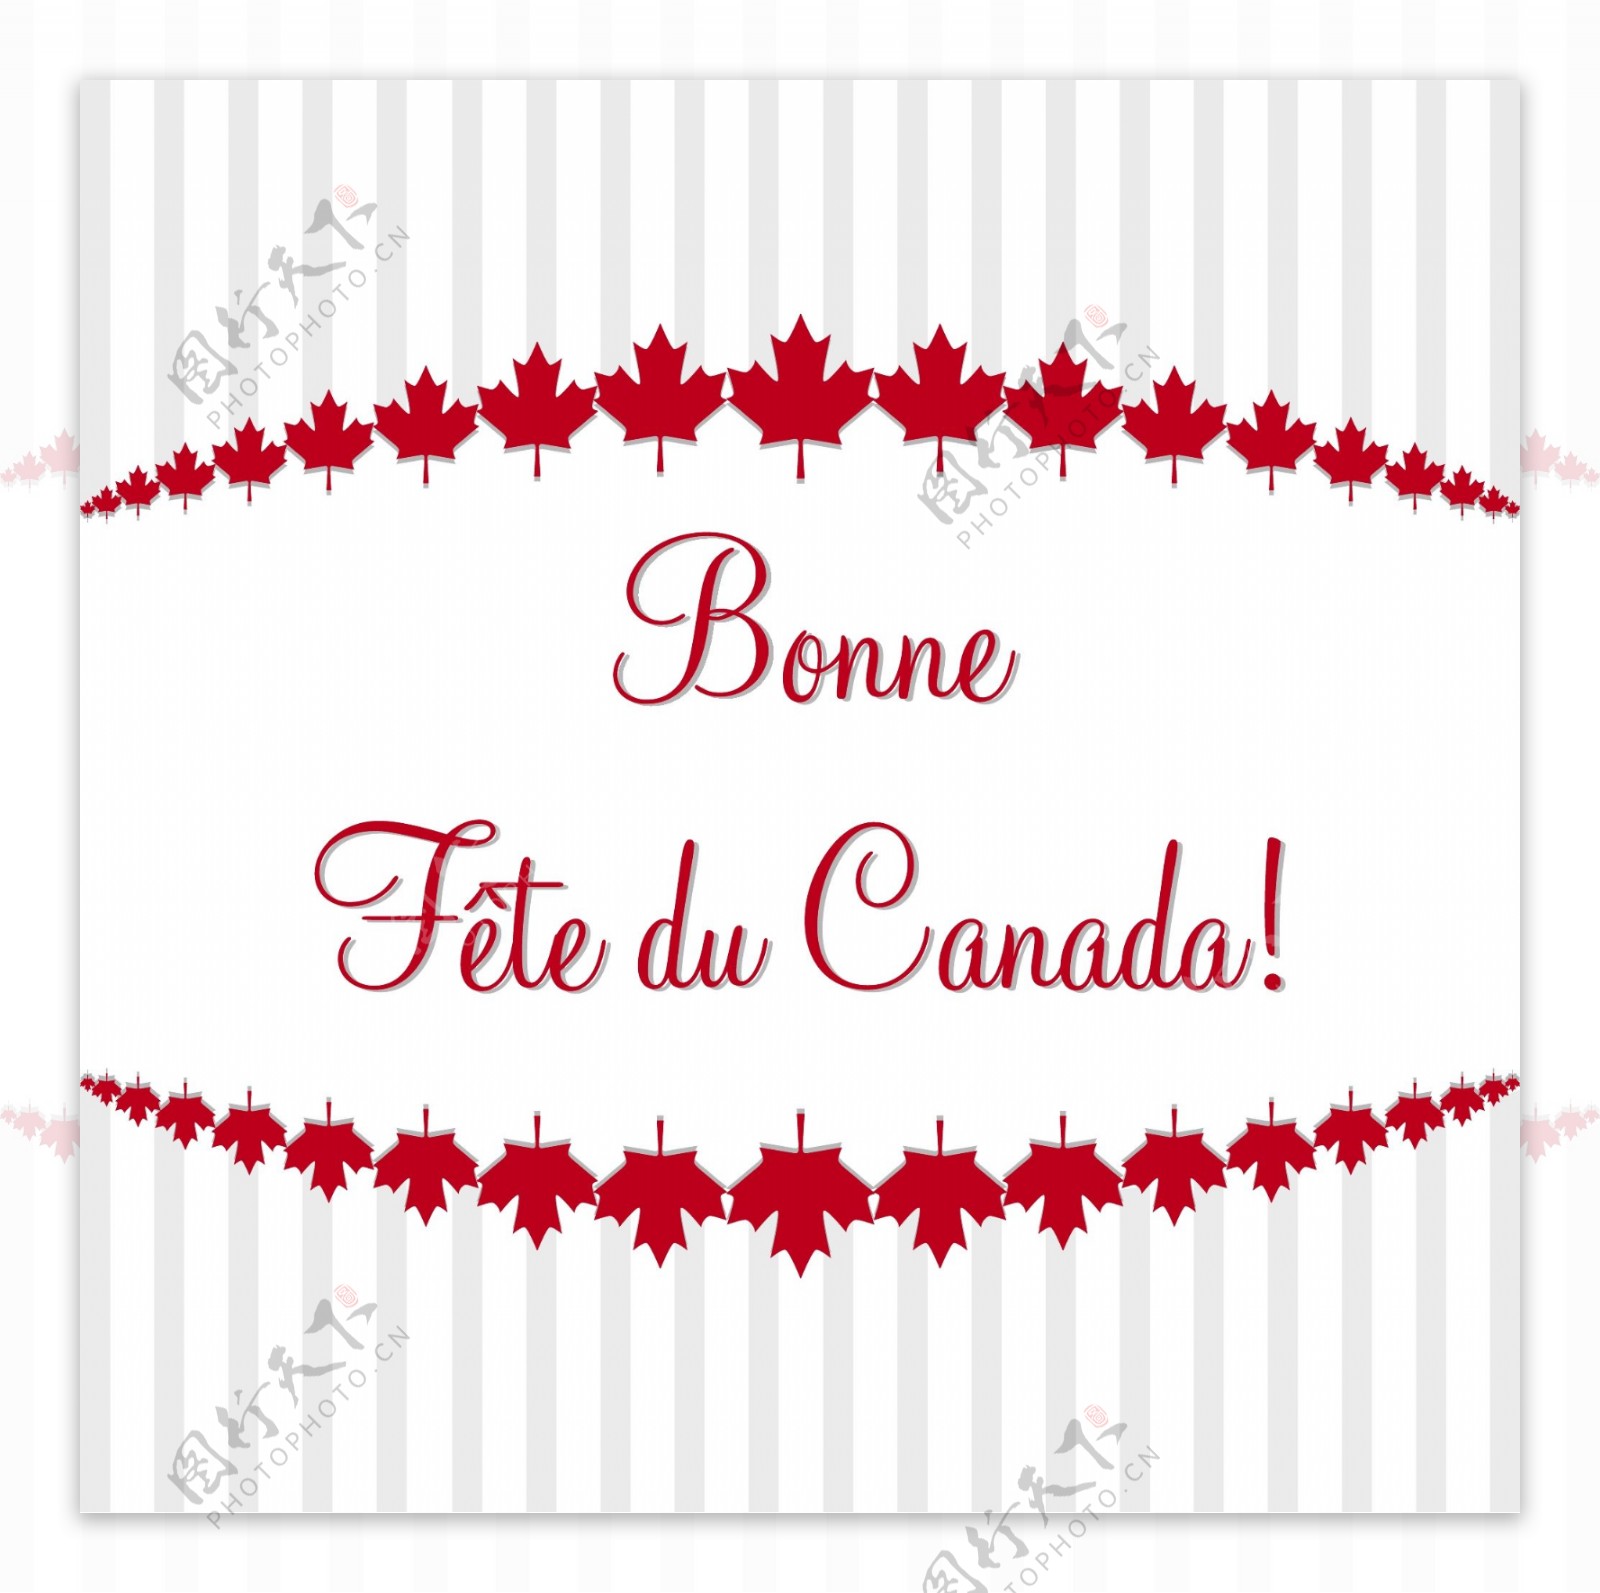 加拿大国庆节快乐卡矢量格式